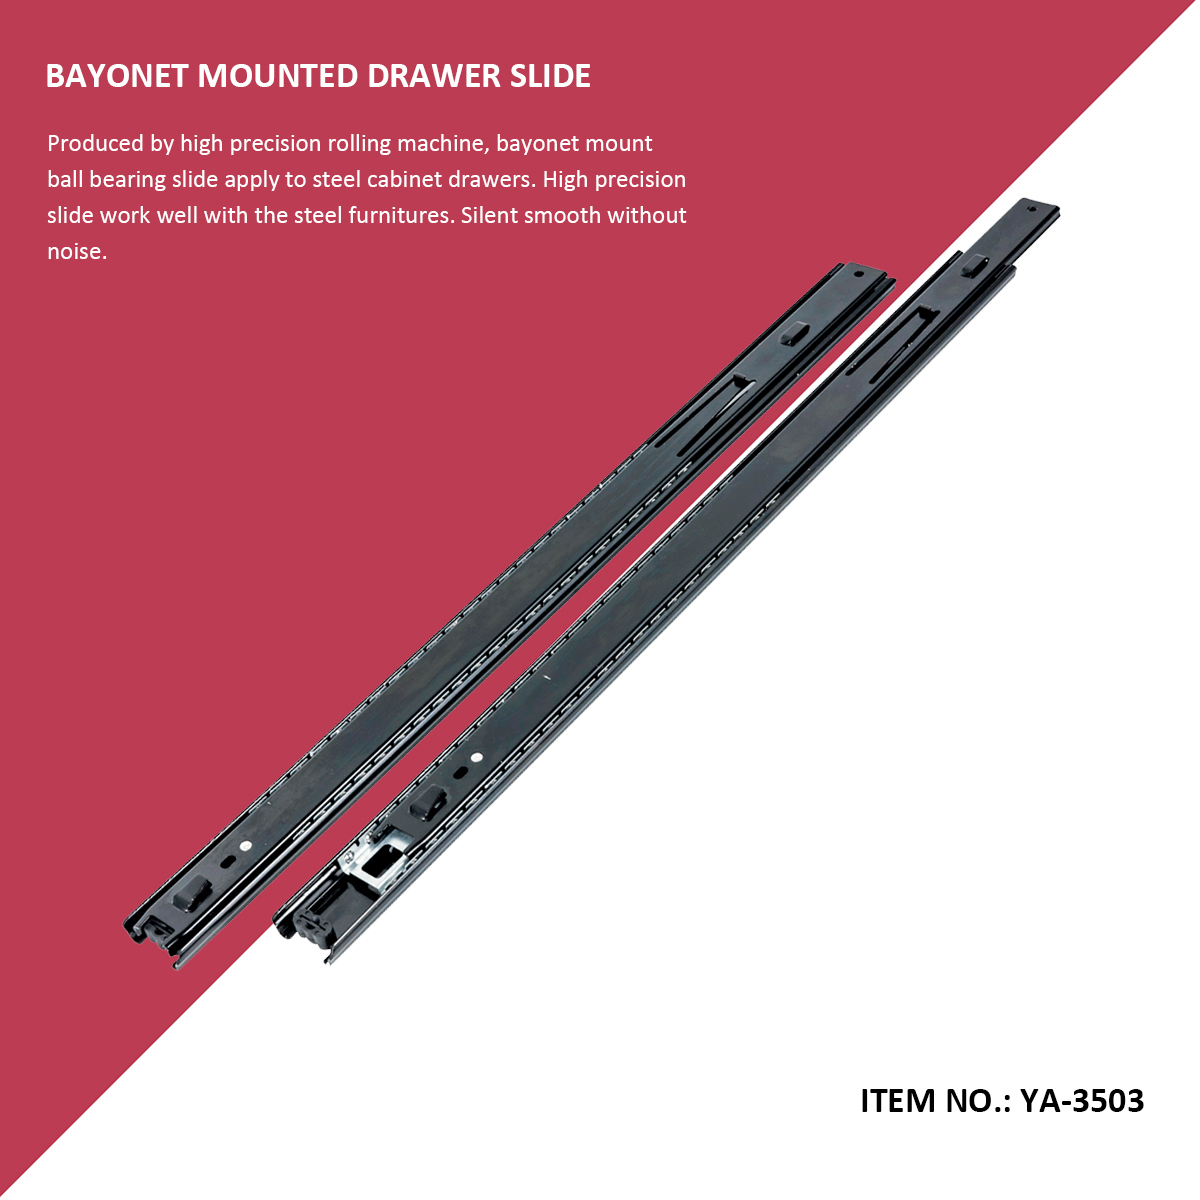 Bayonet Mount Drawer Slide